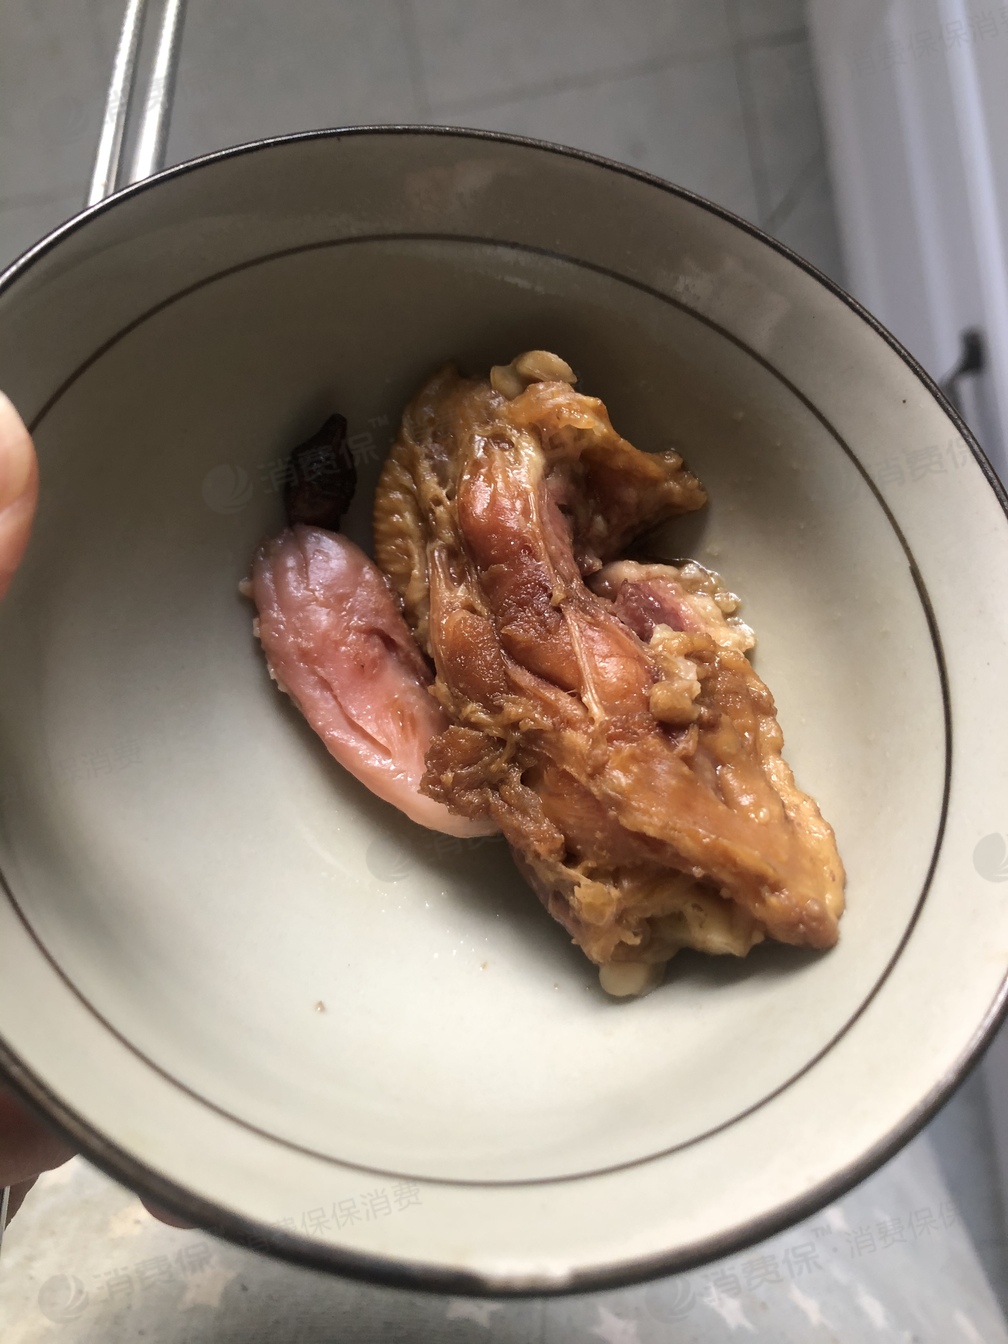 鸡翅质量有问题,煮完肉是跟果冻似的,非常烂的